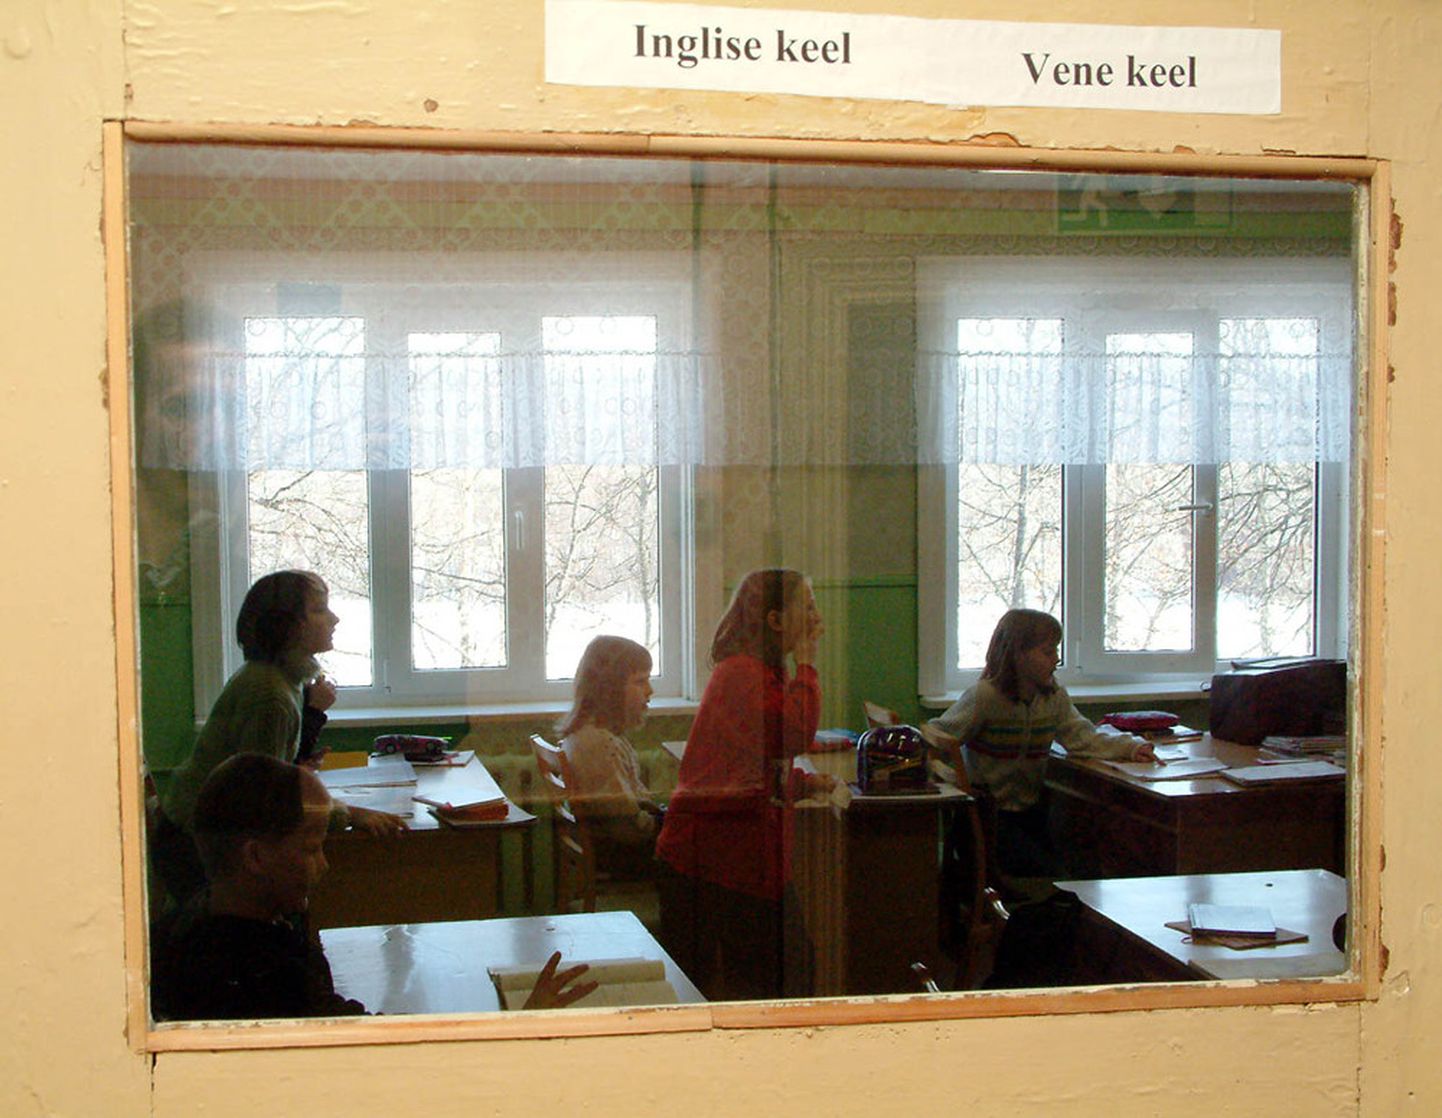 Aastal 2004 oli Tudulinna koolis õpilasi praegusest märksa rohkem, ent liitklassideta ei saadud tollalgi hakkama.
PÕHJARANNIKU ARHIIV